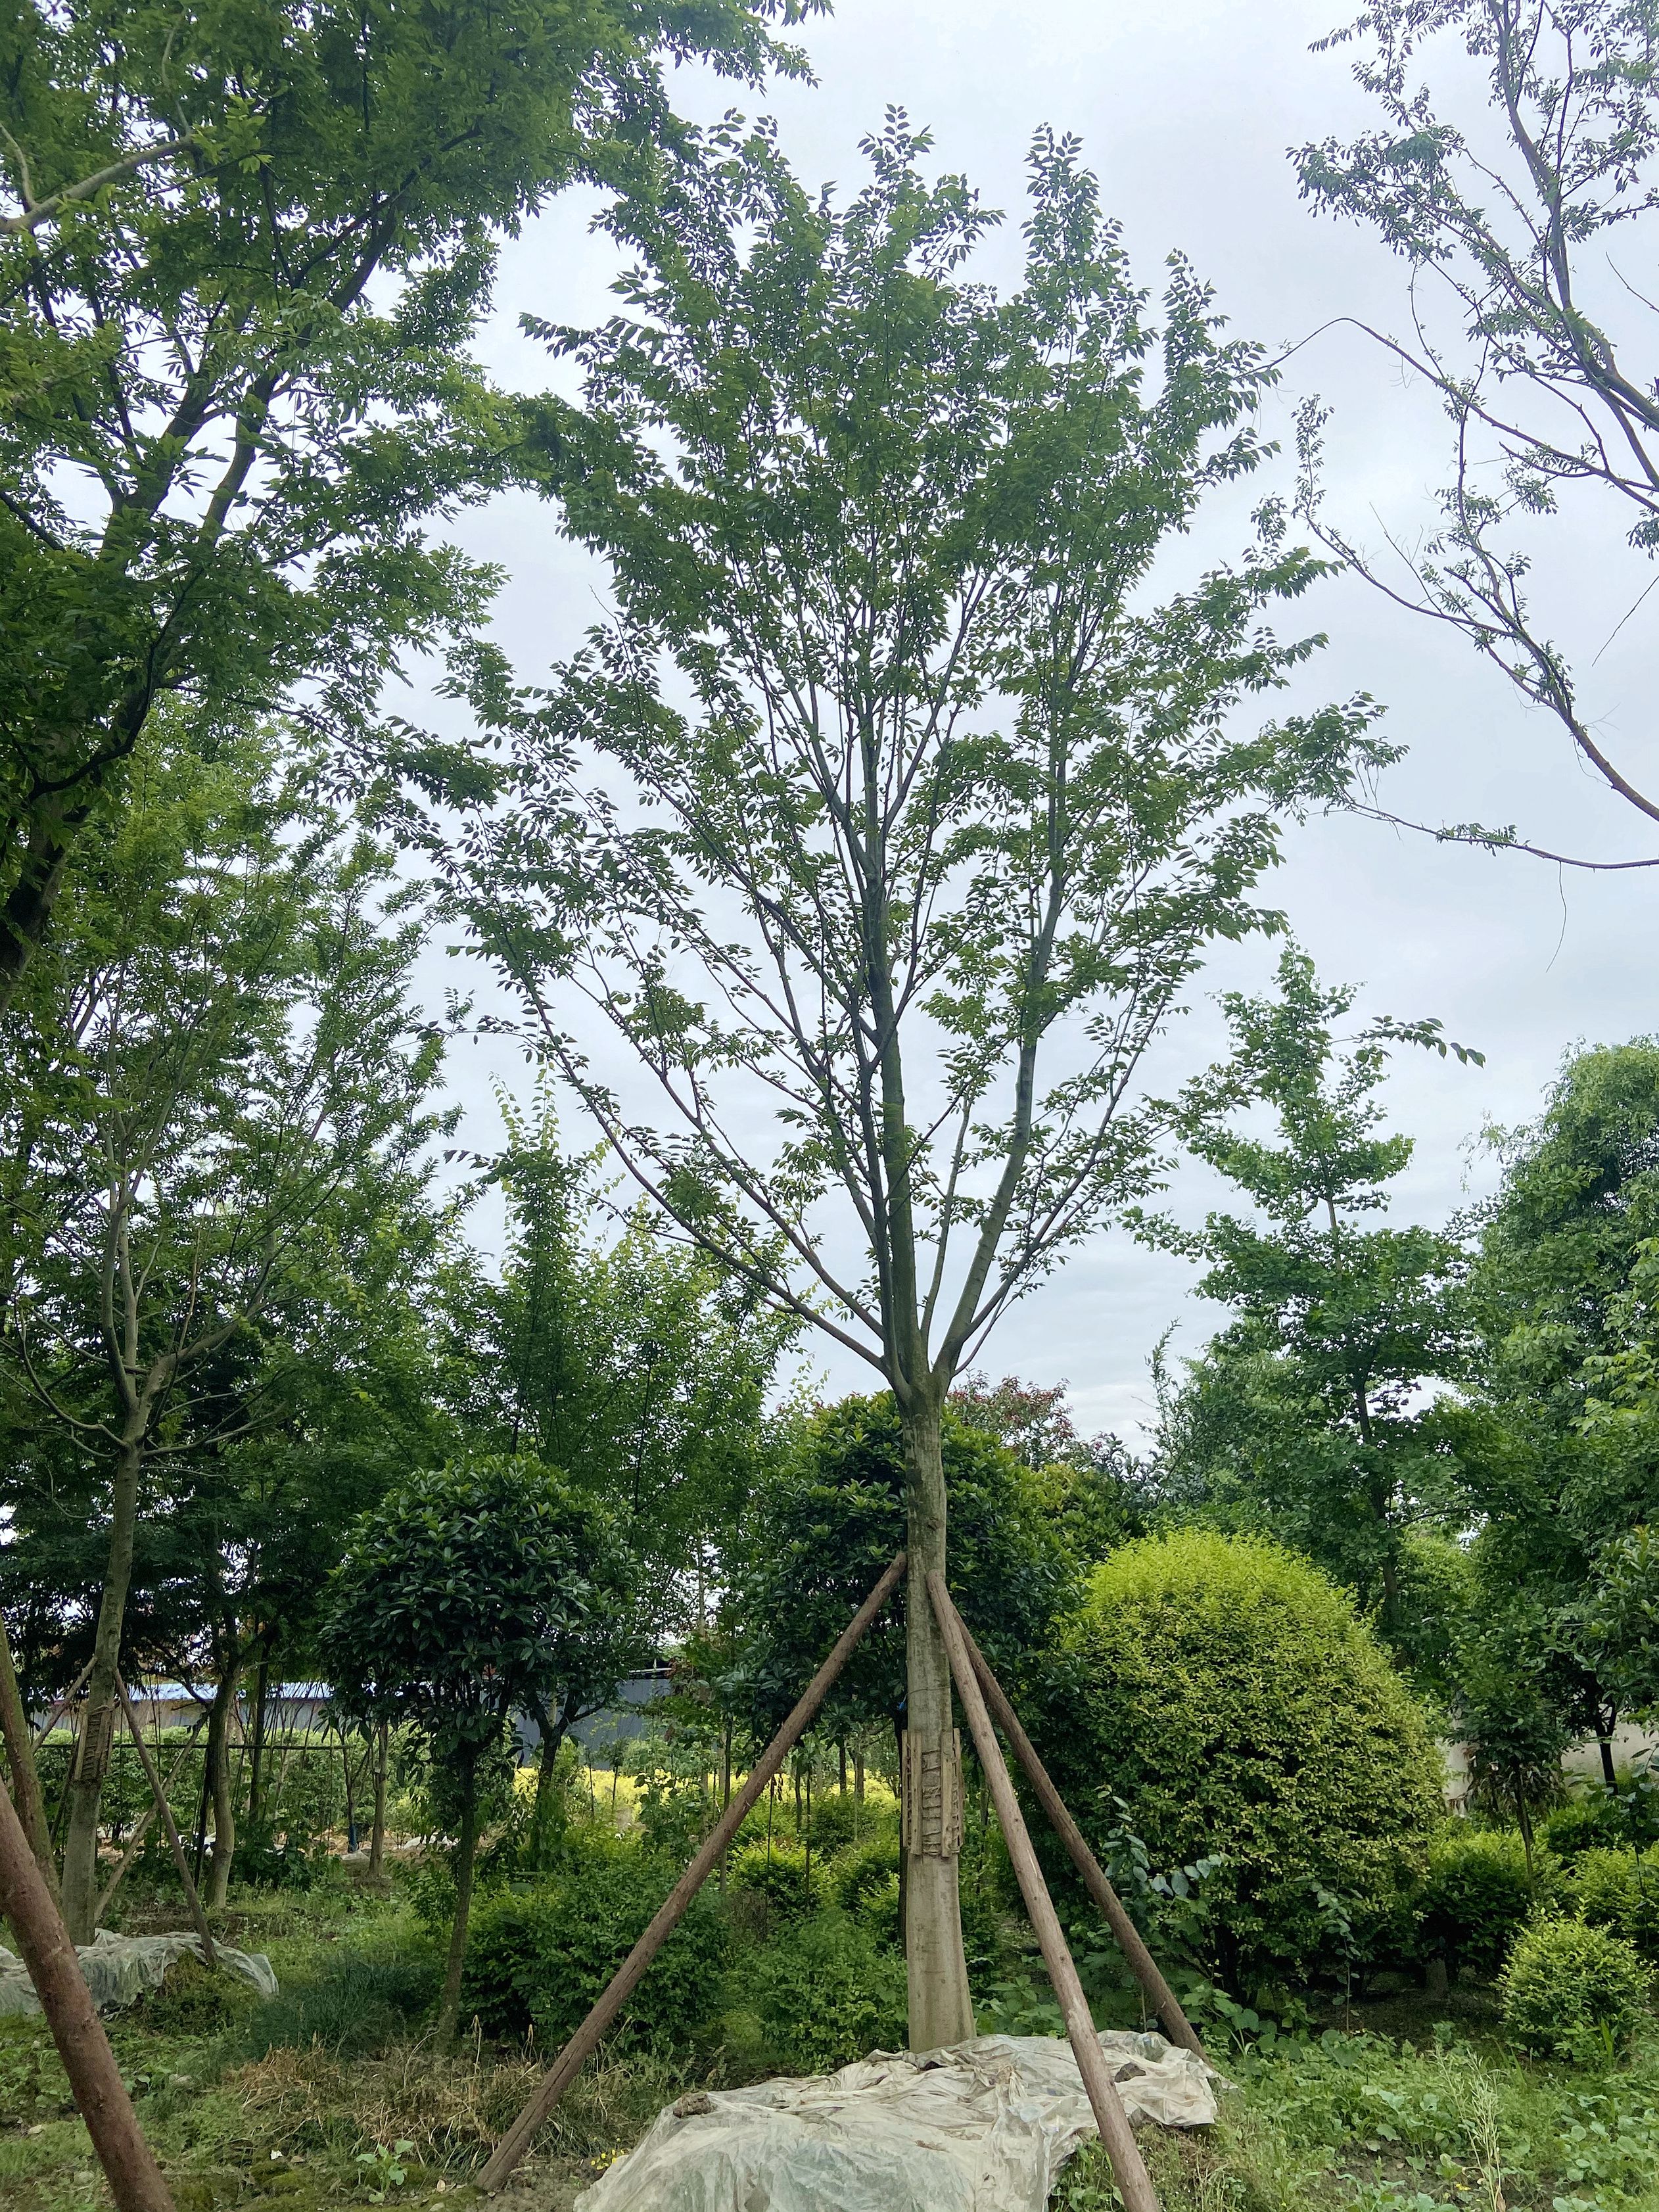 商品详情  名川园艺场长期供应单杆朴树,丛生朴树,米径20-40公分的